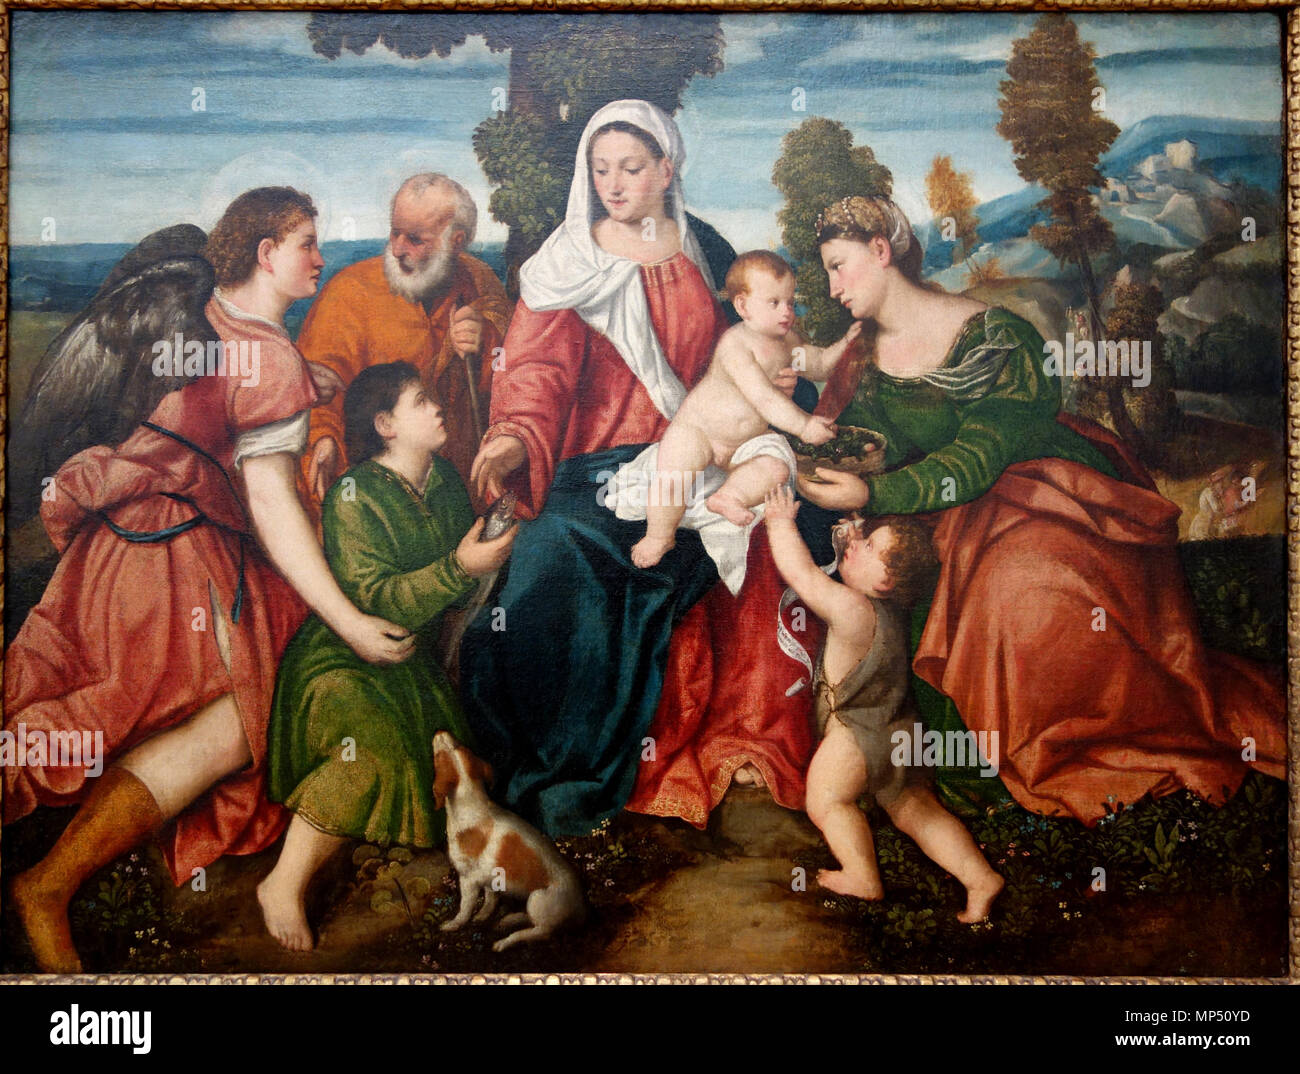 1175 La Sainte Famille avec Tobias et l'Ange, STS. Dorothy, et de l'enfant Jean-baptiste, attribué à Bonifacio de' Pitati Bonifacio Veronese, appelé, mi 1500s - National Museum of Western Art, Tokyo - DSC08062 Banque D'Images